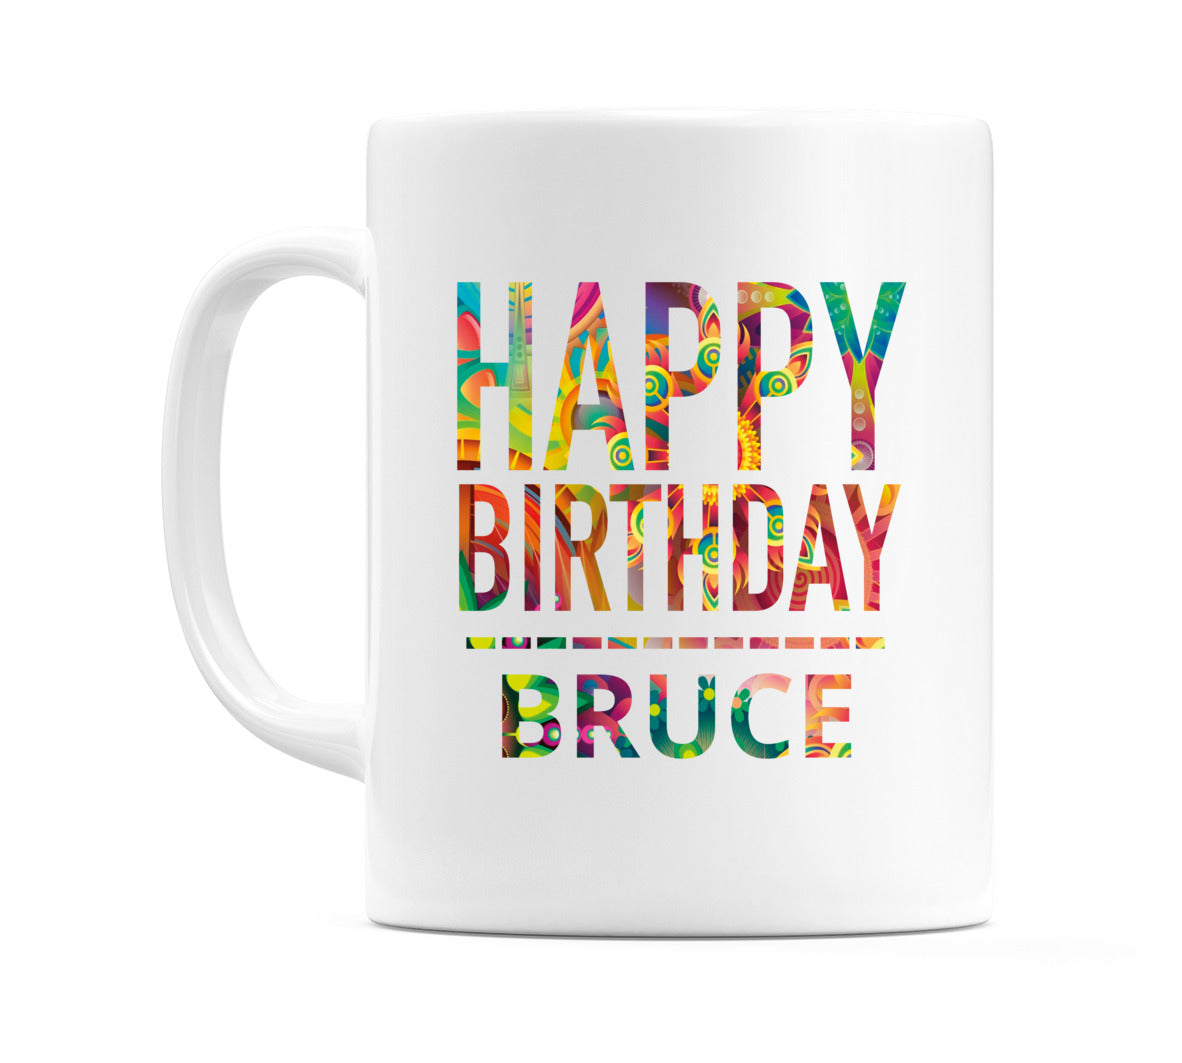 Happy Birthday Bruce (Tie Dye Effect) Mug Cup by WeDoMugs